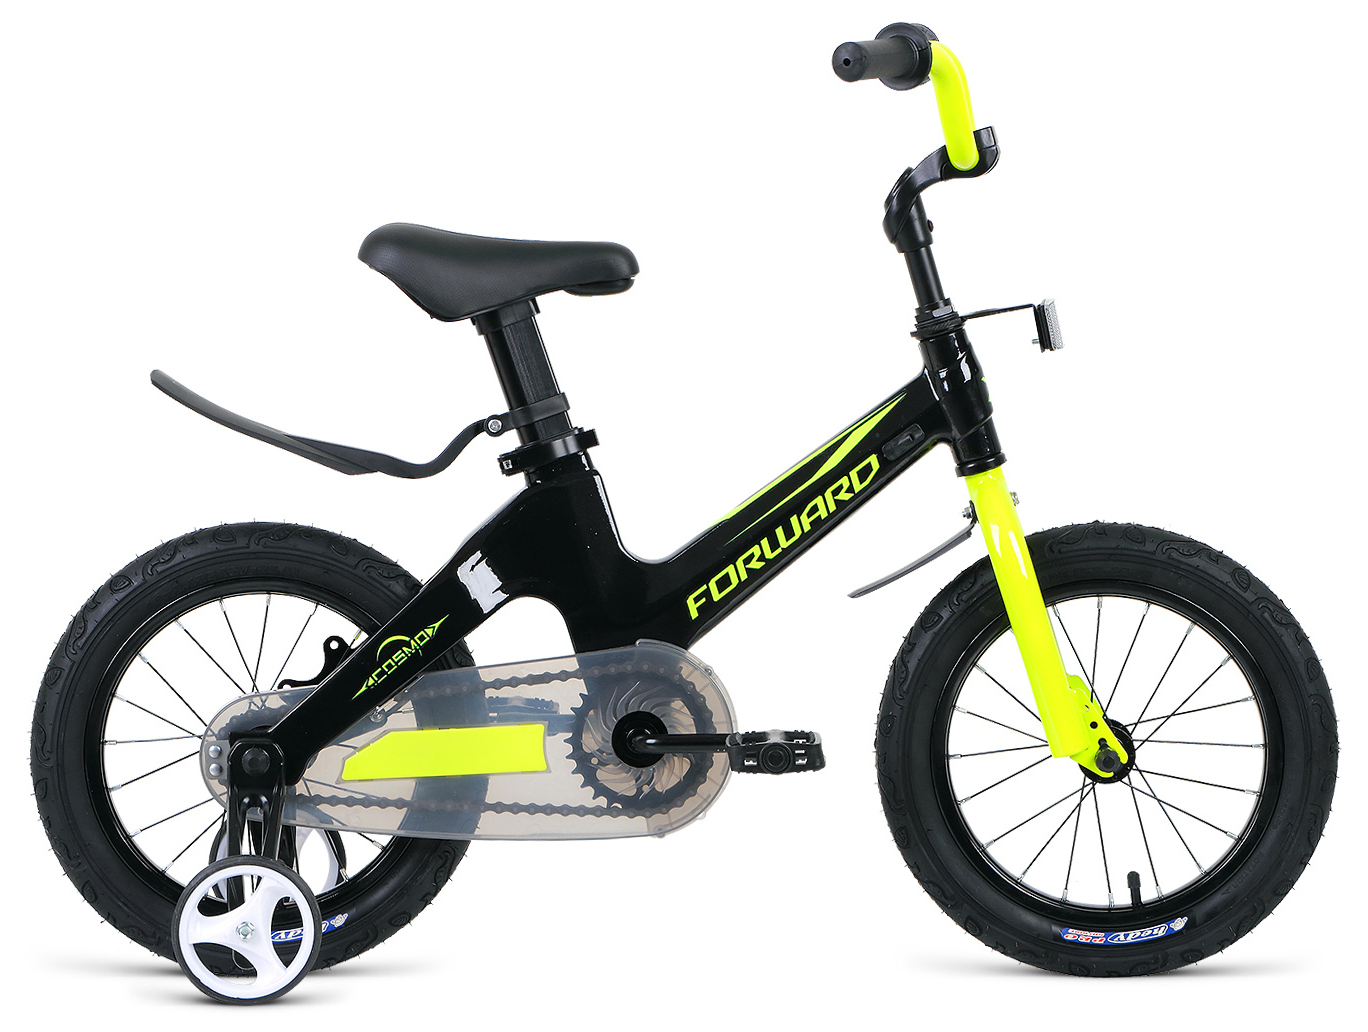  Отзывы о Детском велосипеде Forward Cosmo 14 (2021) 2021